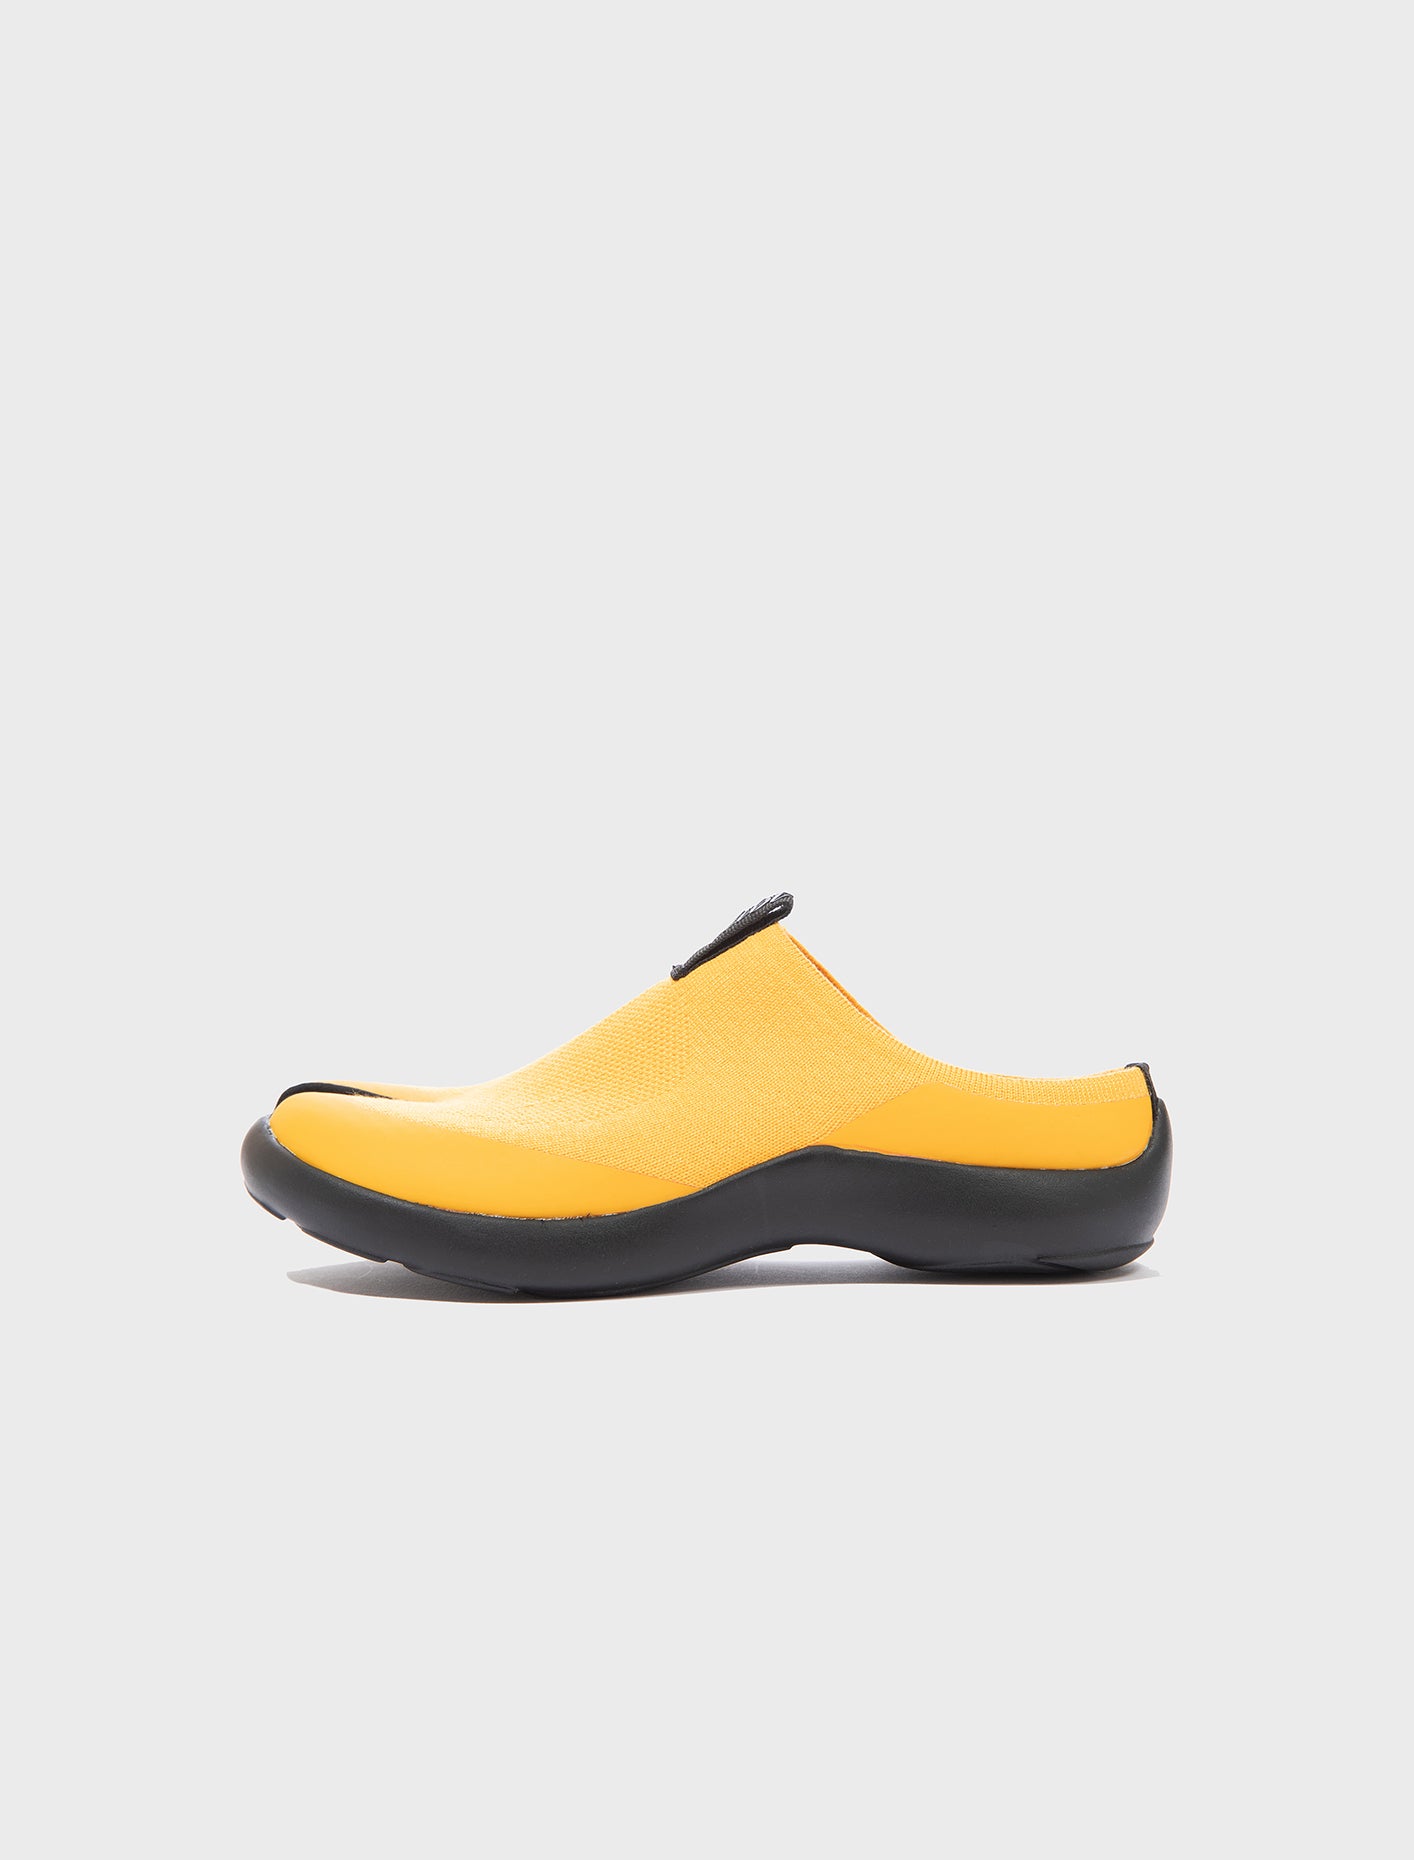 Tabi Footwear Tabi Mules Men Mules Yellow/Black